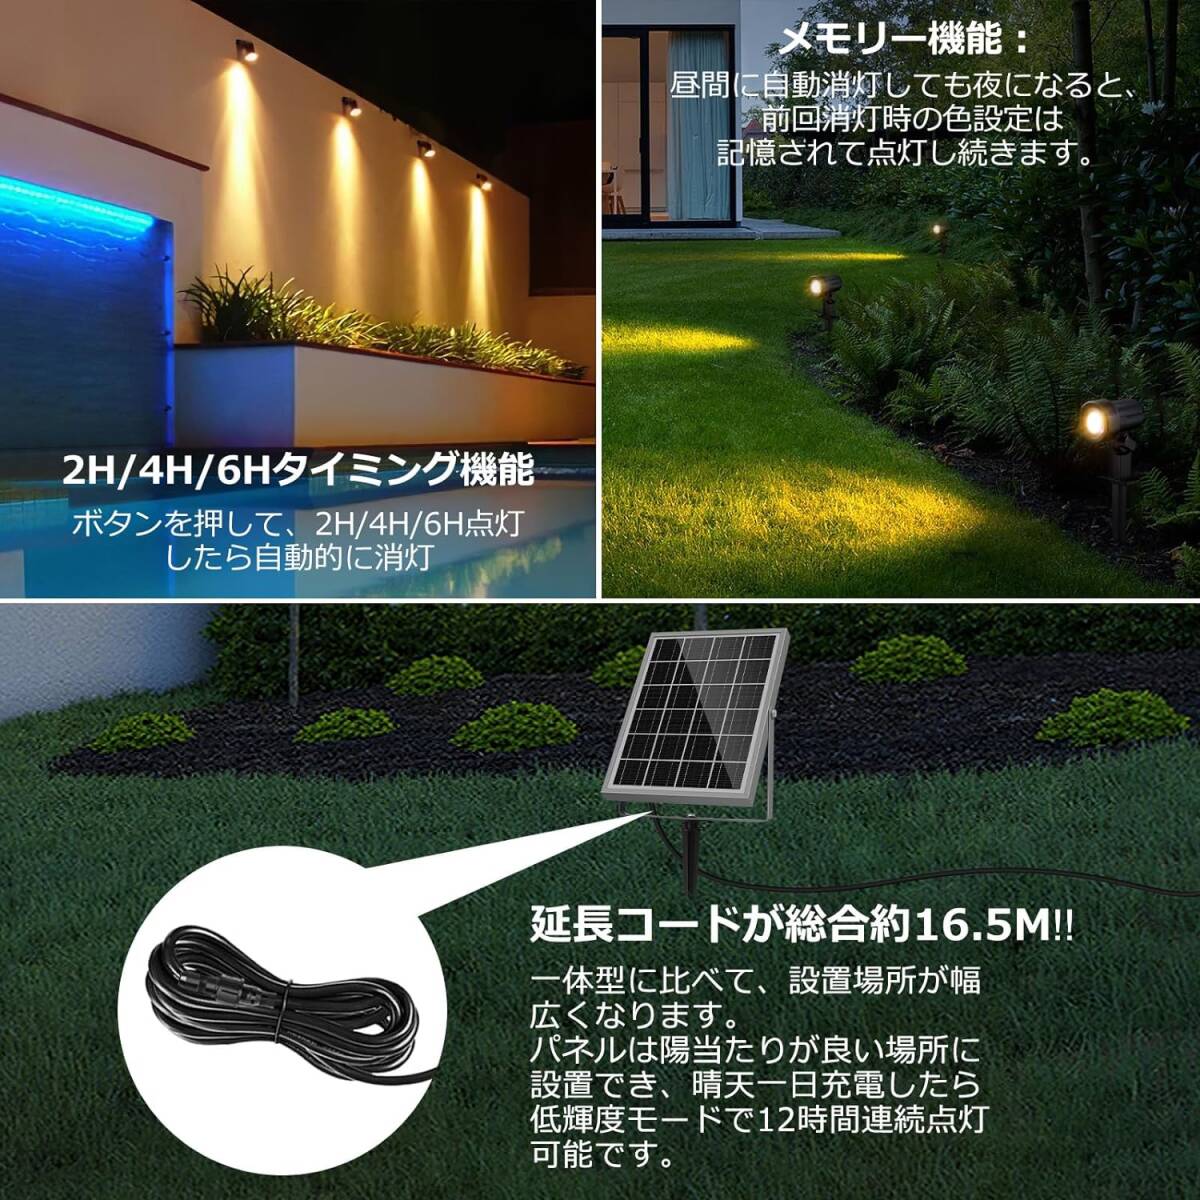 MEIKEE 6灯ソーラー ガーデンライト【リモコン付き】ソーラーライト屋外 スポットライト おしゃれ ソーラー充電 分離式 庭園_画像5